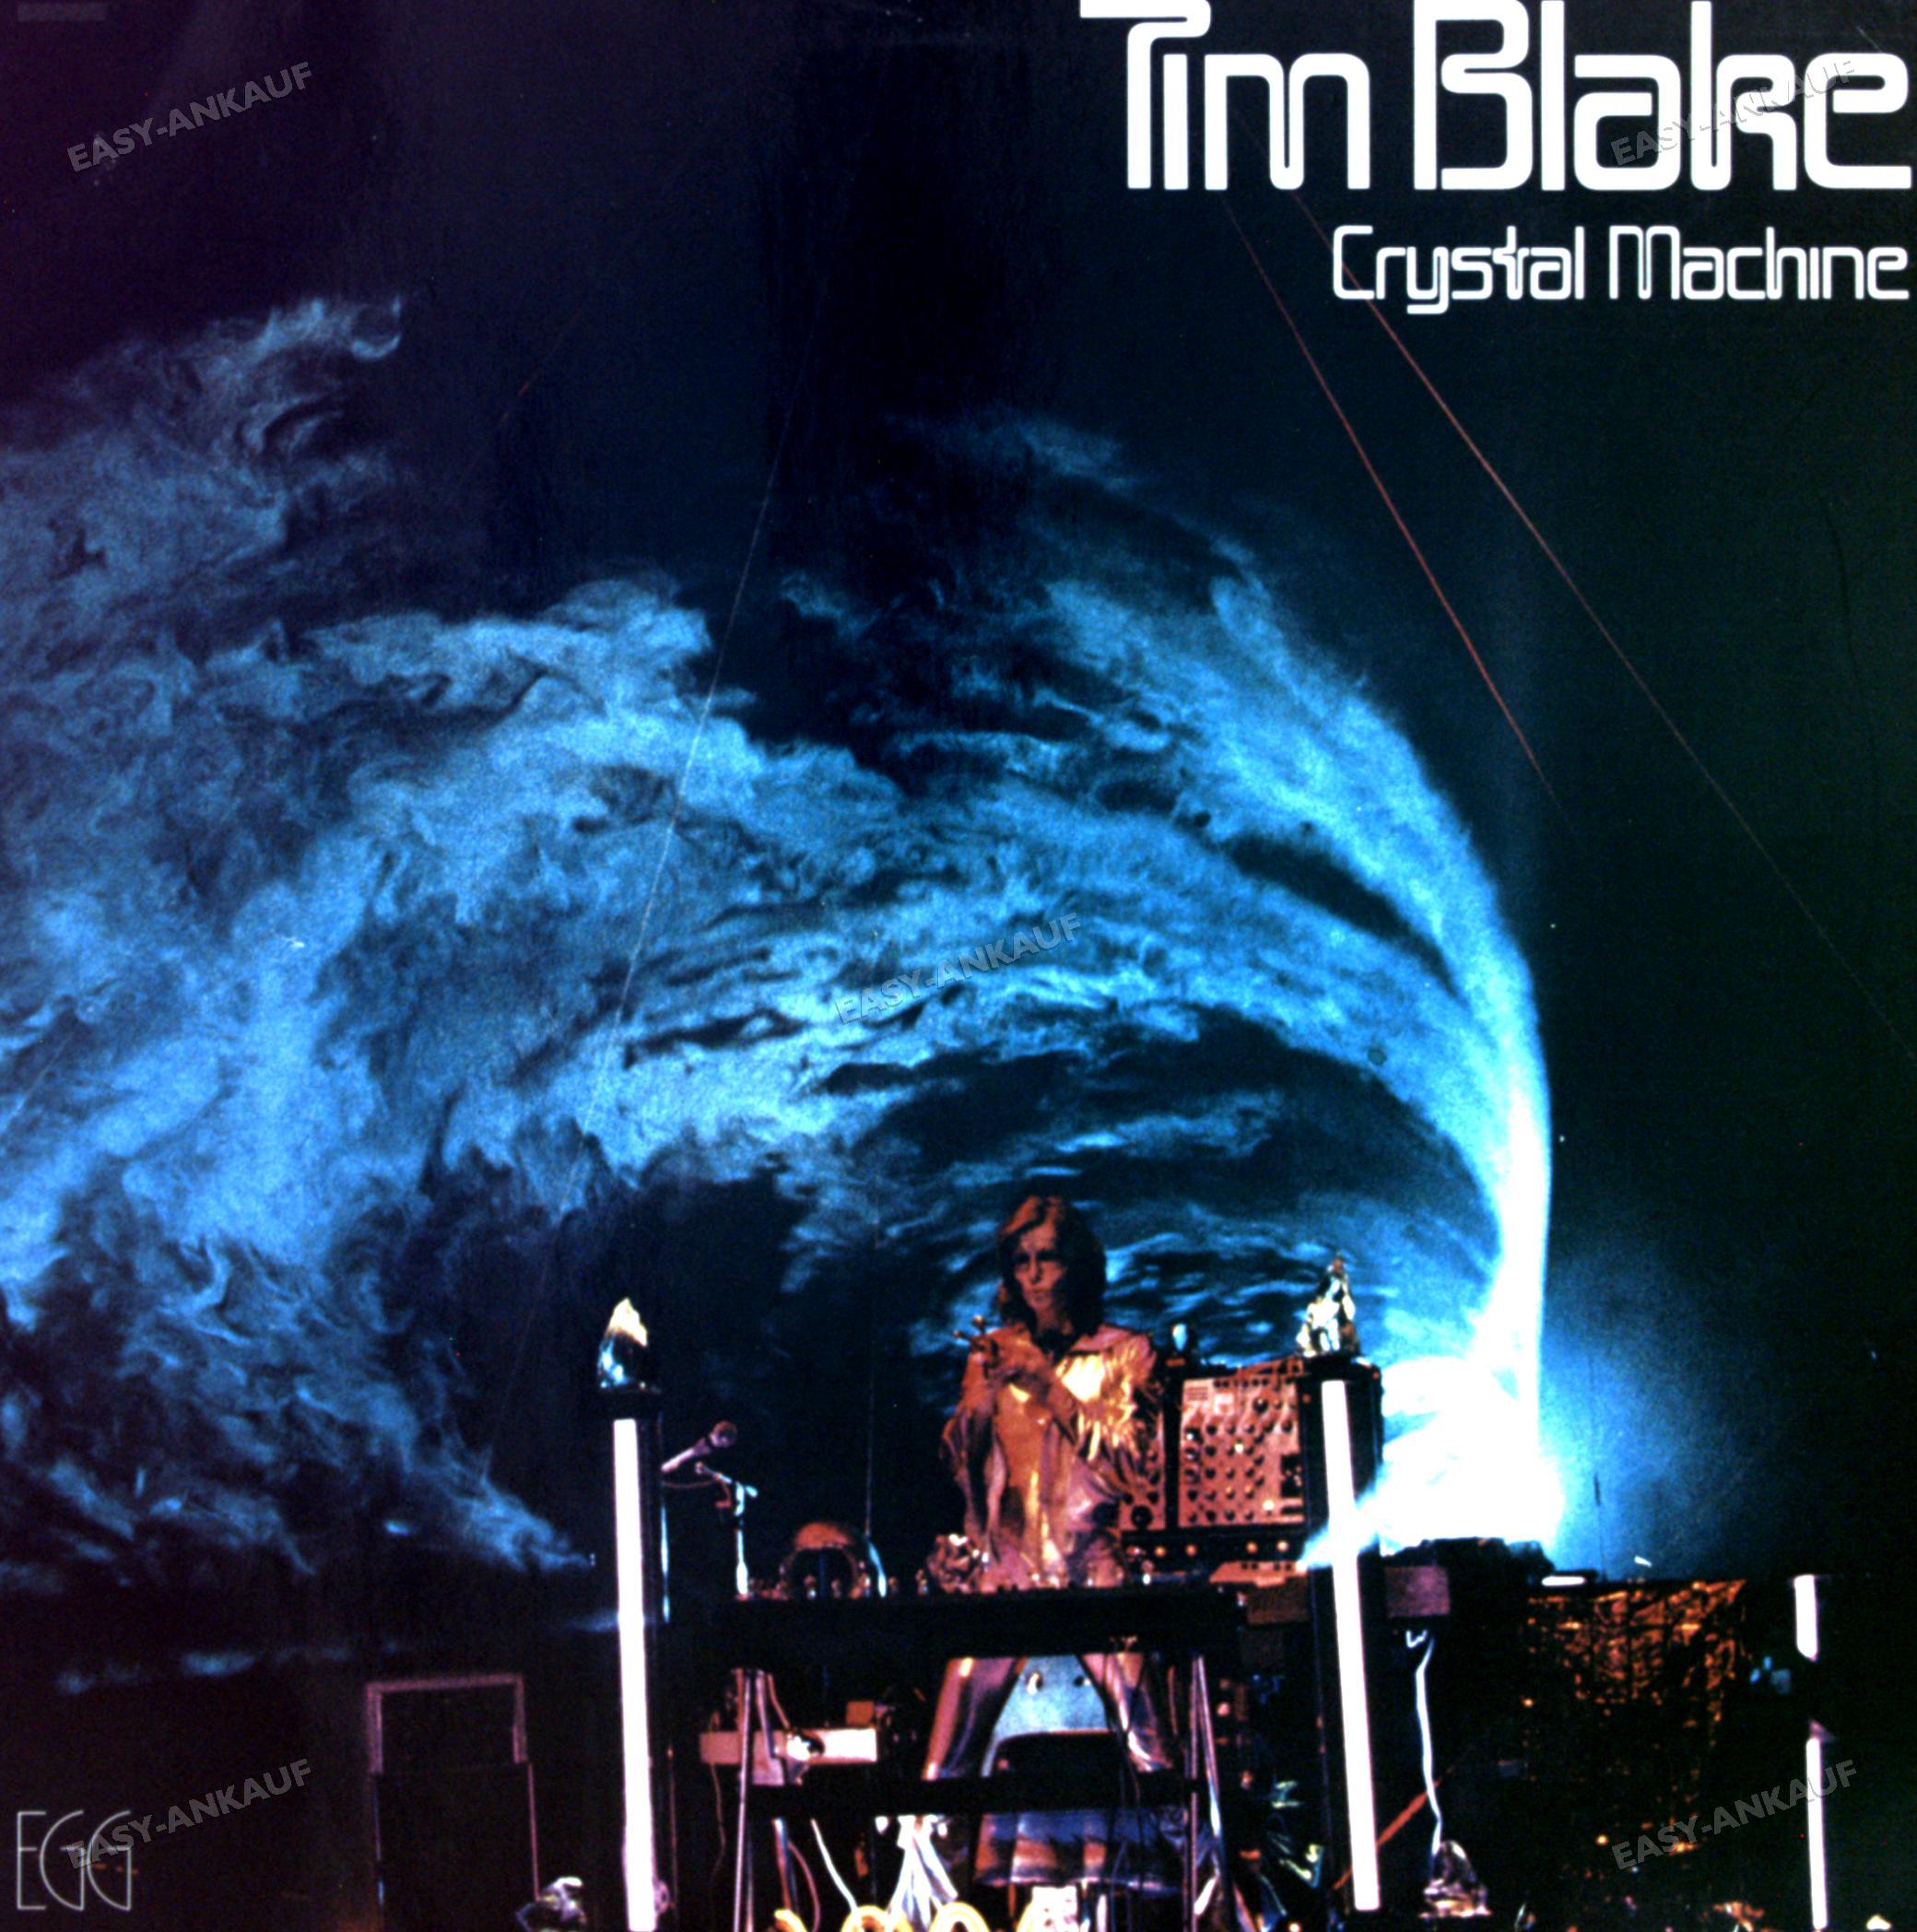 Tim Blake - Crystal Machine GER LP 1977 (VG+/VG) .* - Picture 1 of 1